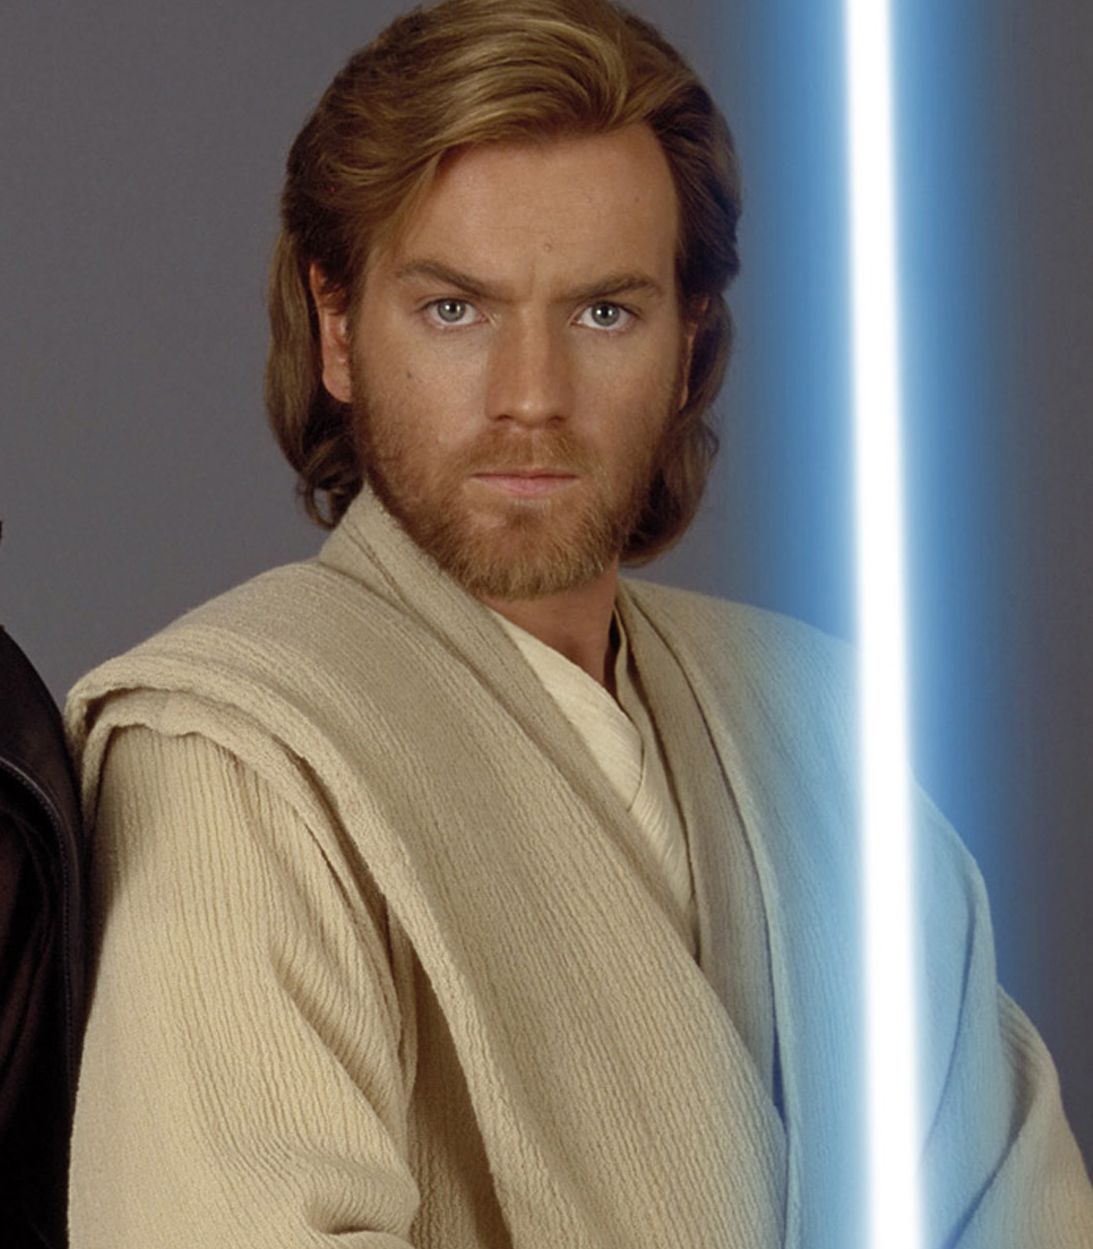 Ewan McGregor as Obi-Wan Kenobi in Star Wars Attack of the Clones